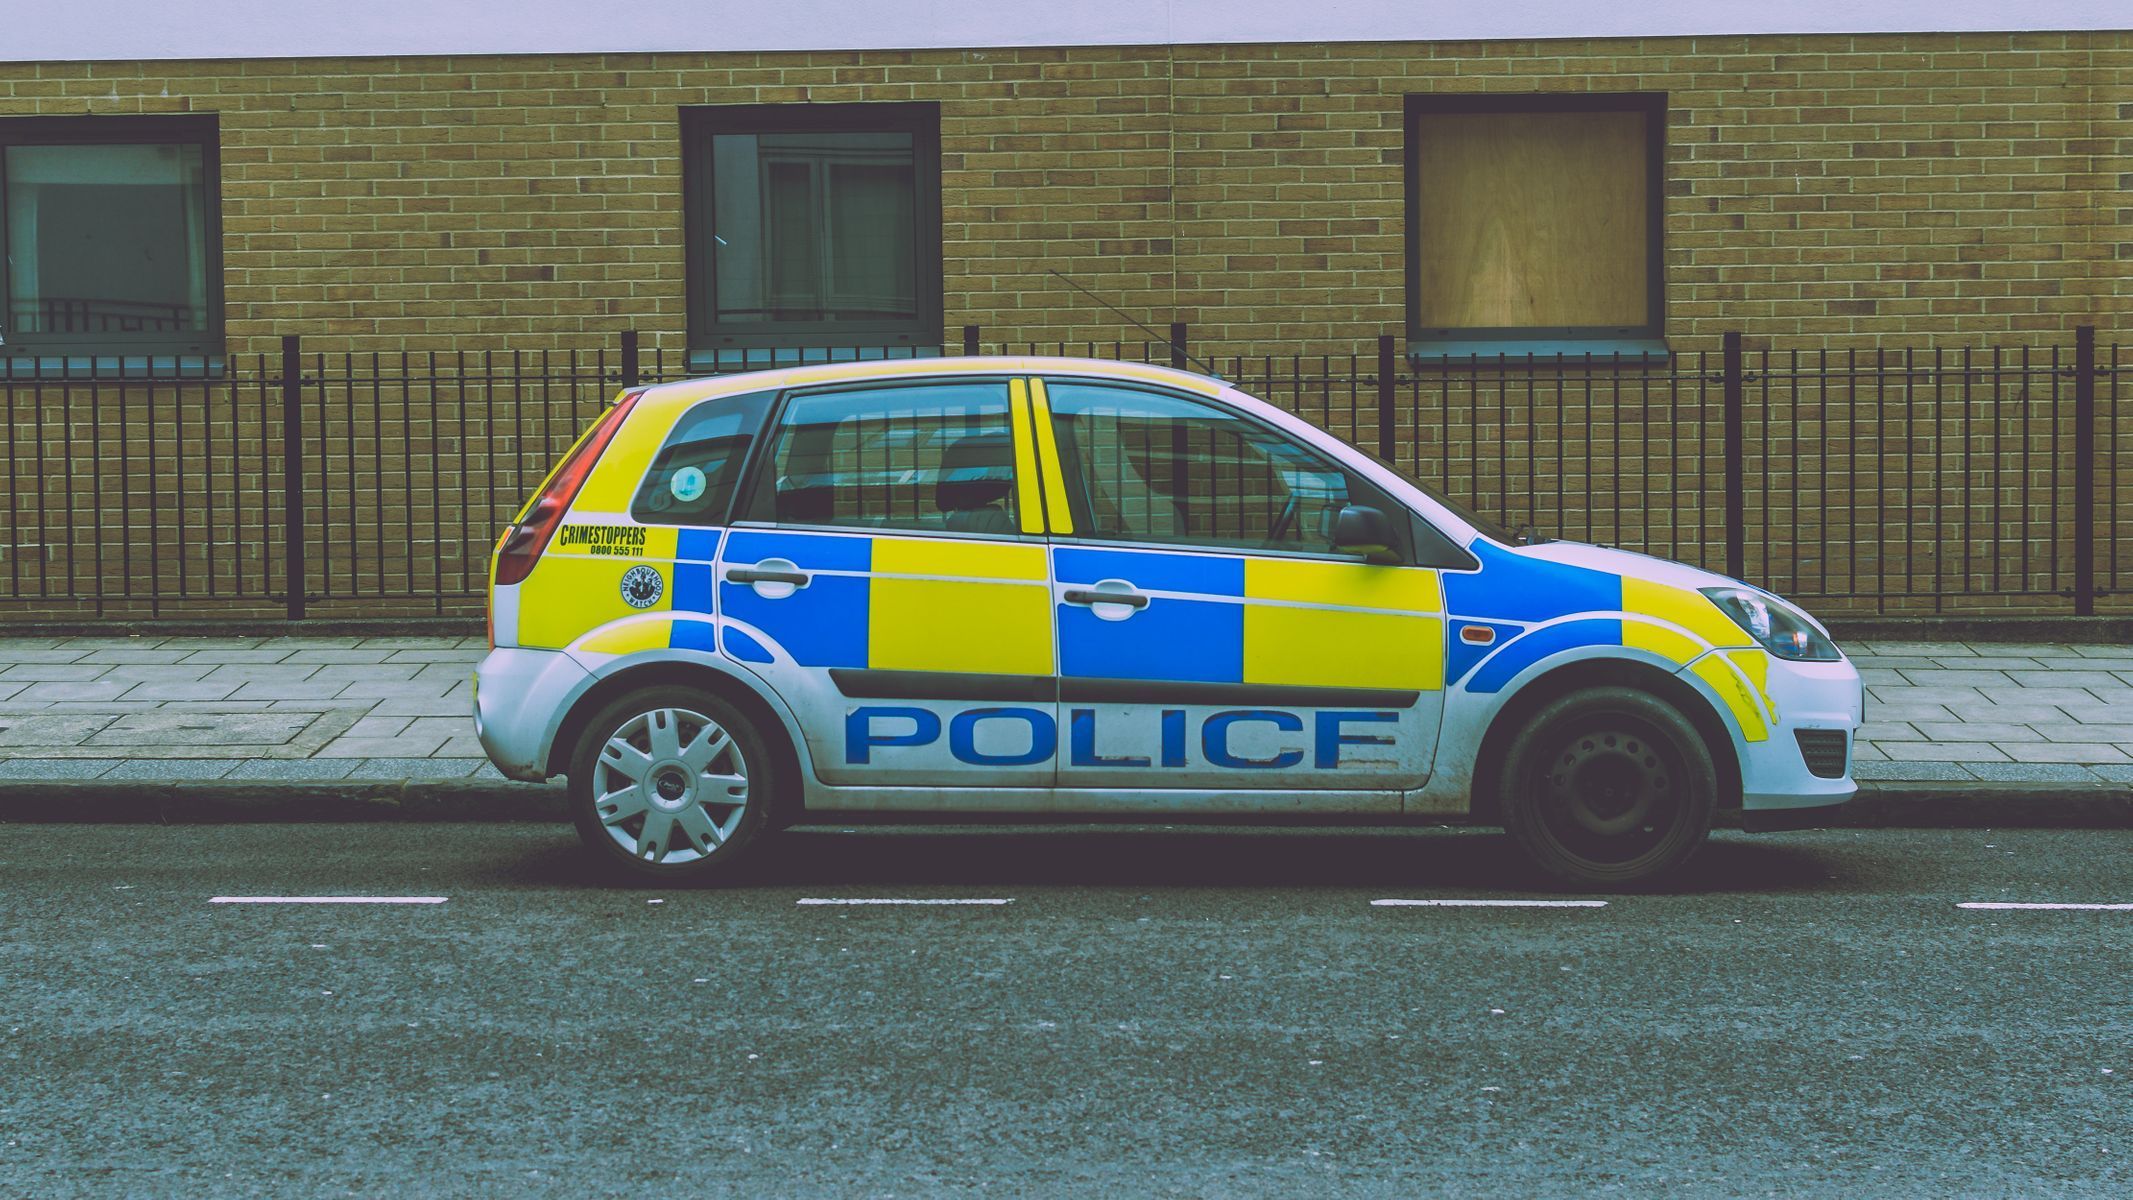 Policie v Bristolu, Británie, ilustrační foto.